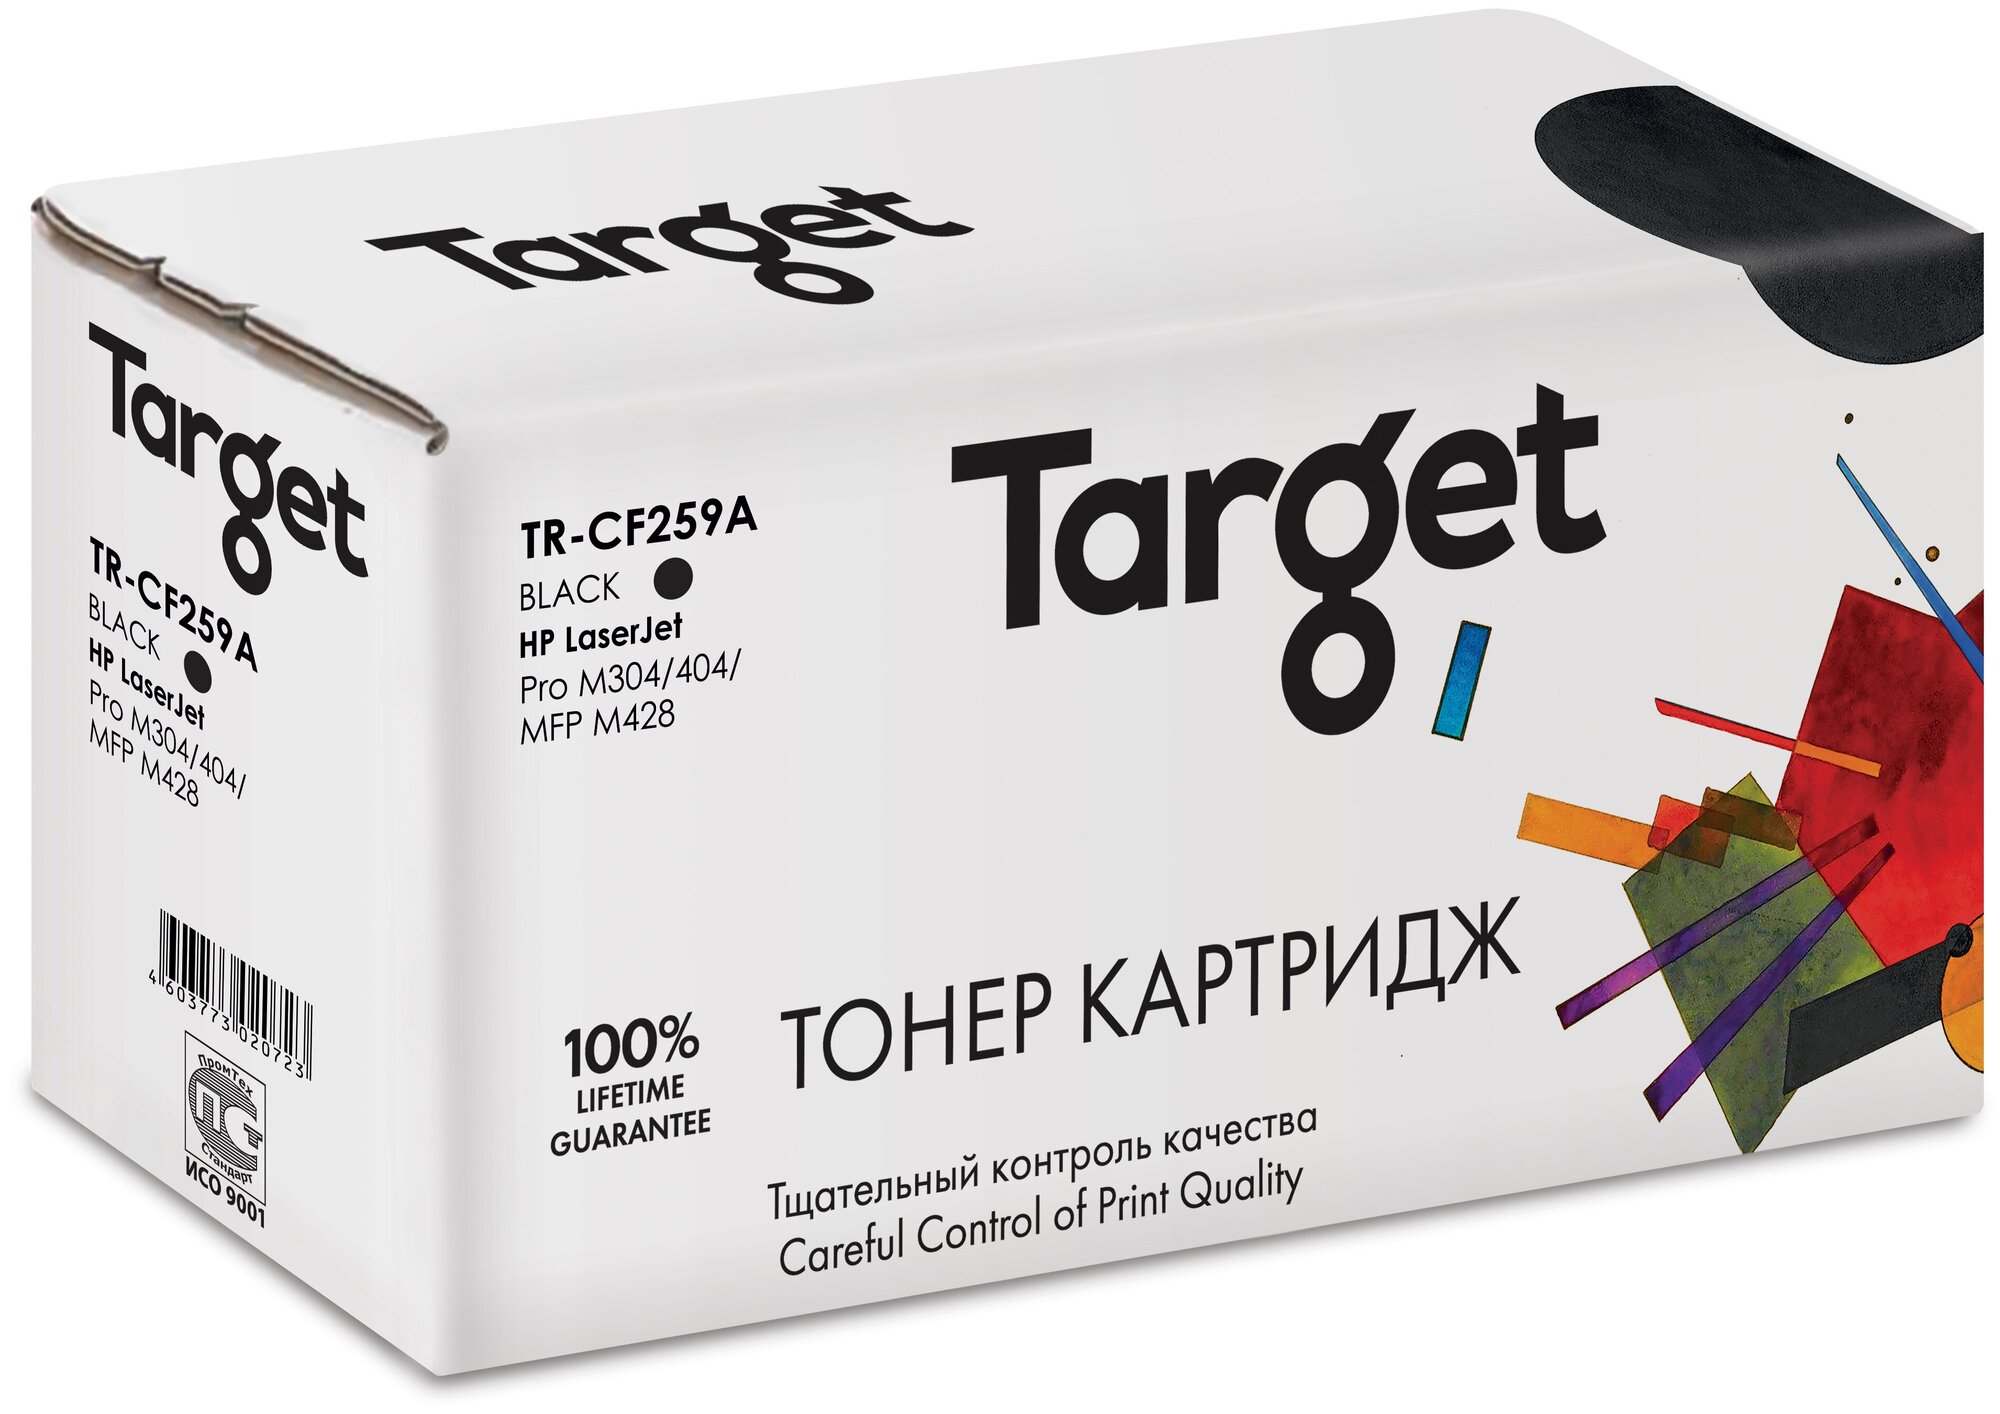 Картридж Target CF259A, черный, для лазерного принтера, совместимый